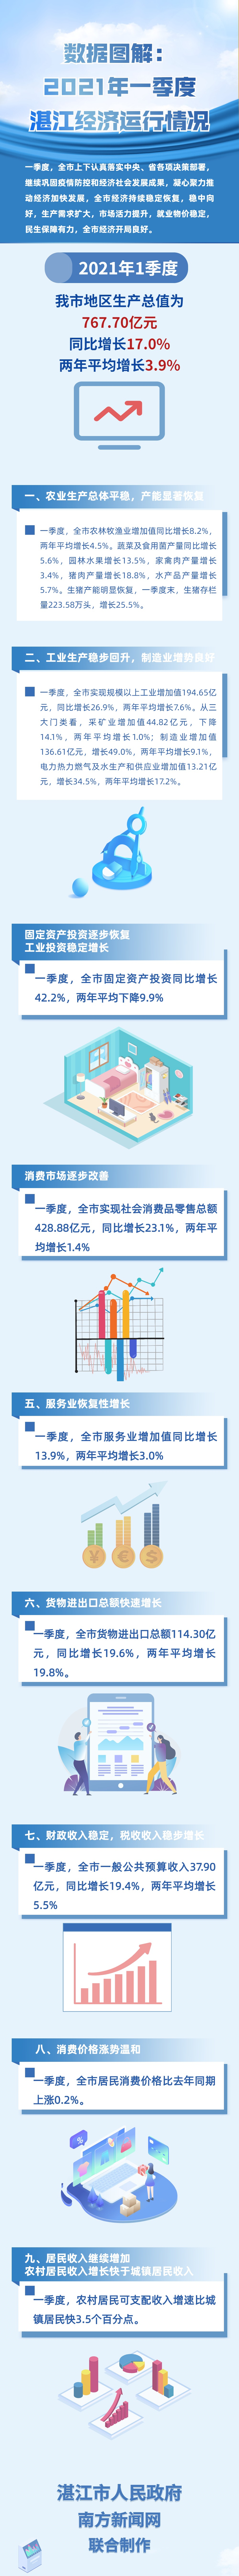 数据图解：2021年一季度湛江经济运行情况.jpg